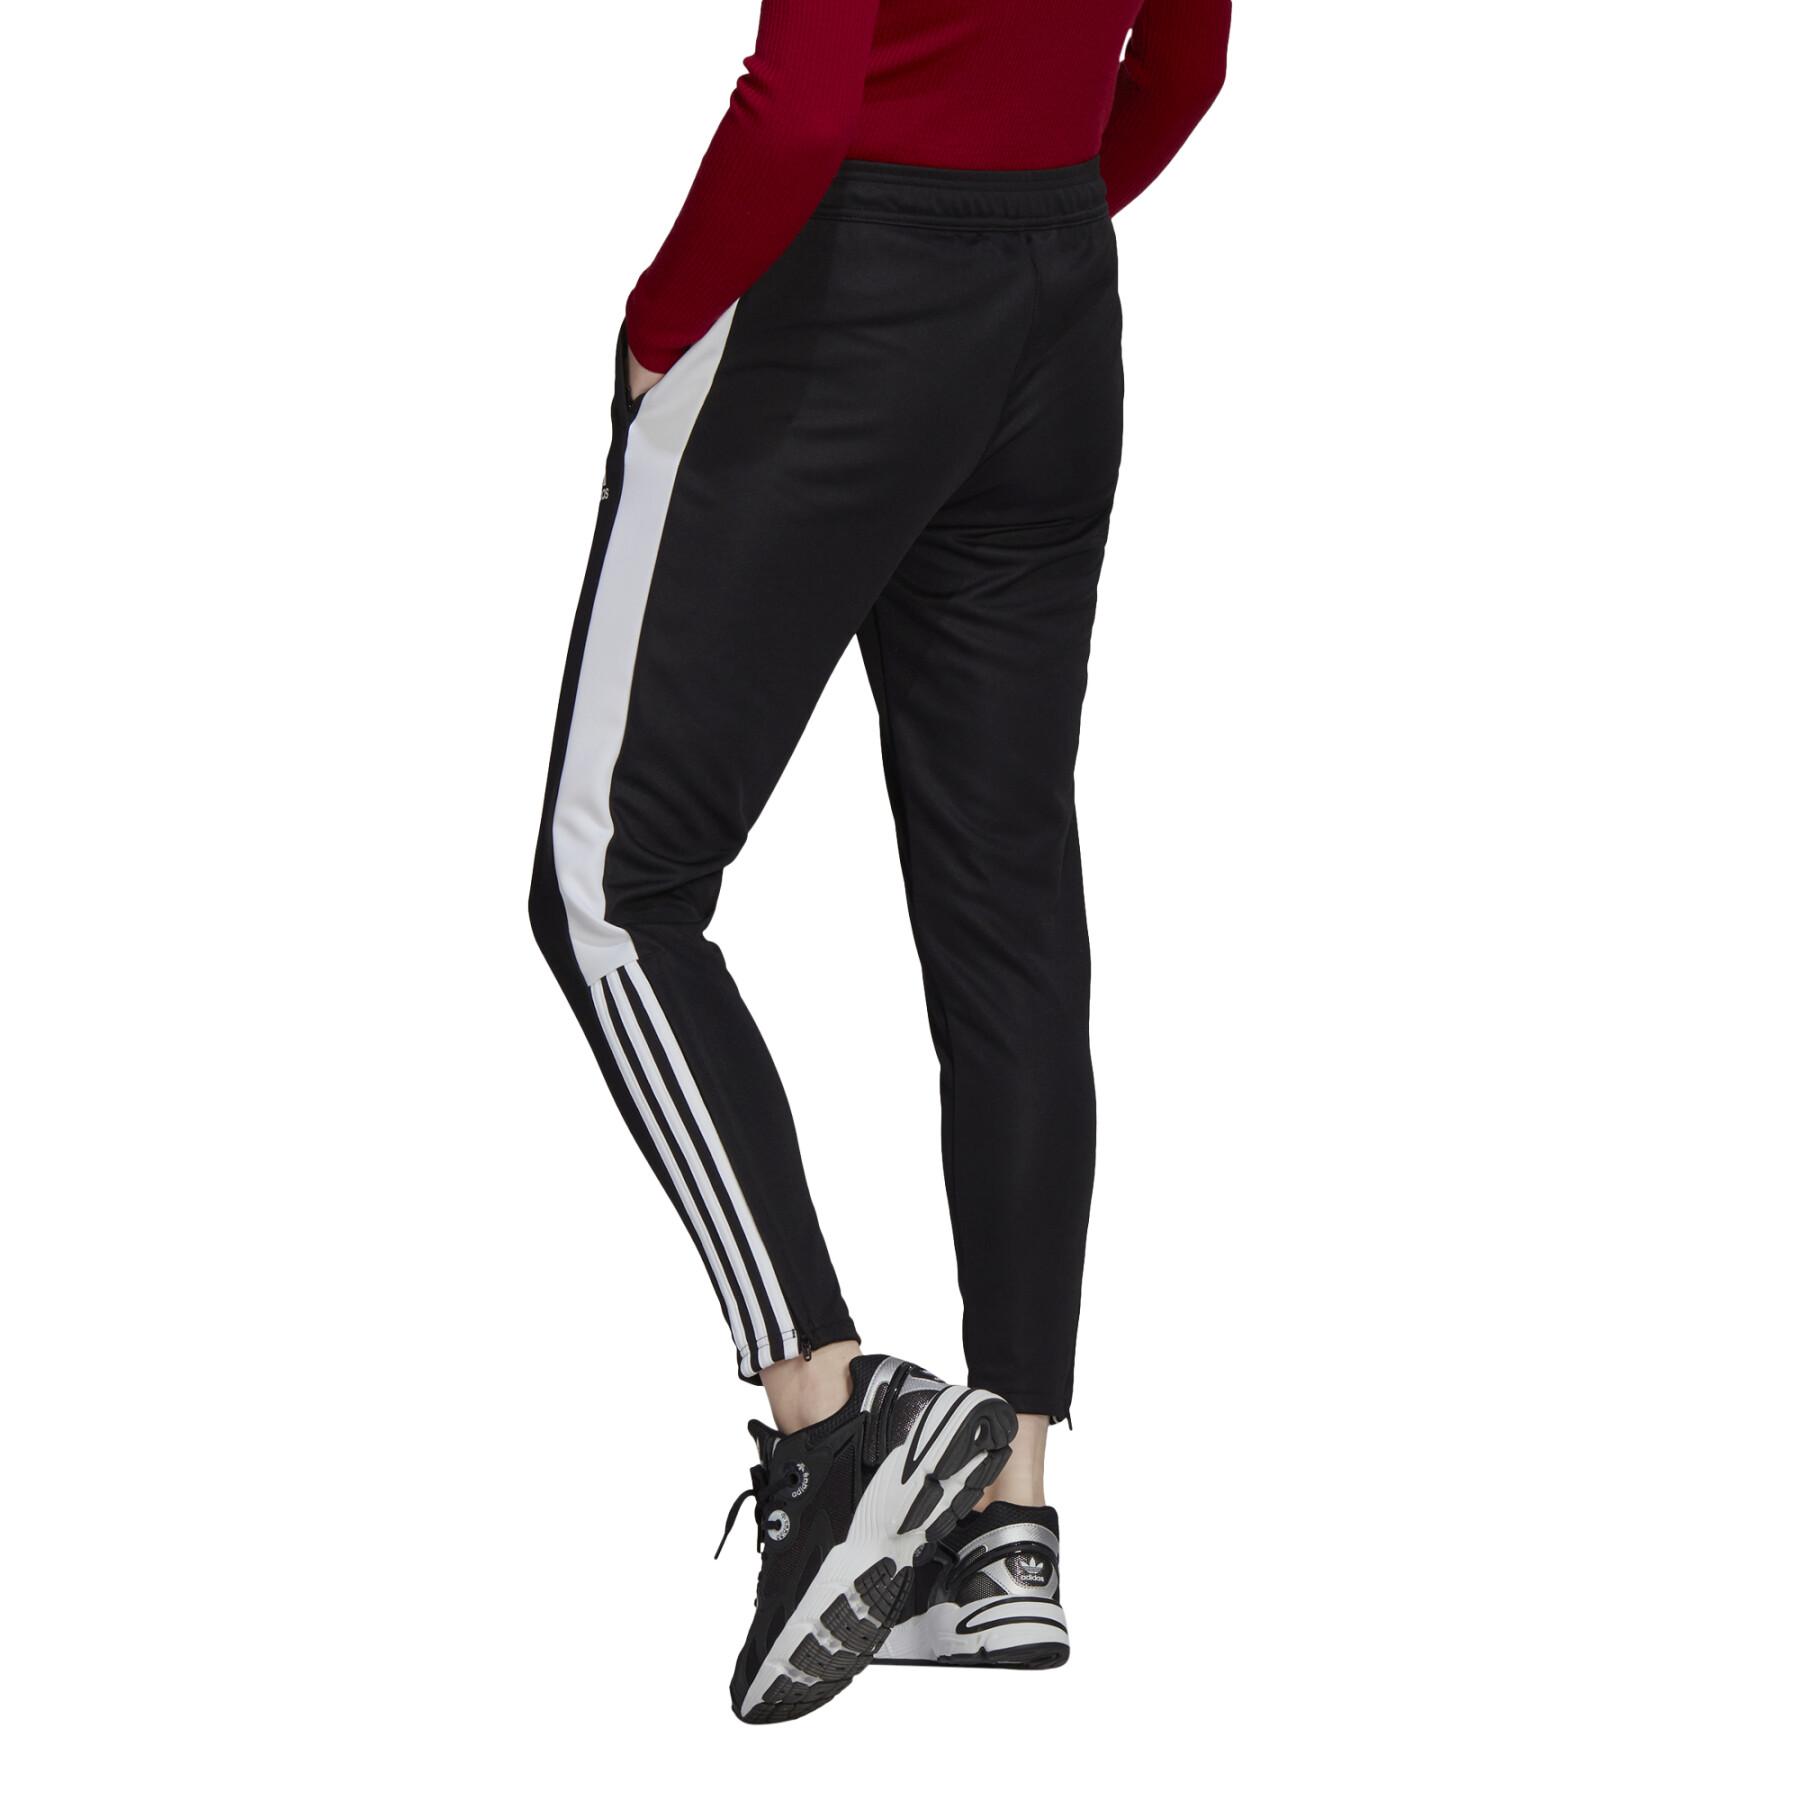 Women's jogging suit adidas tiro essential